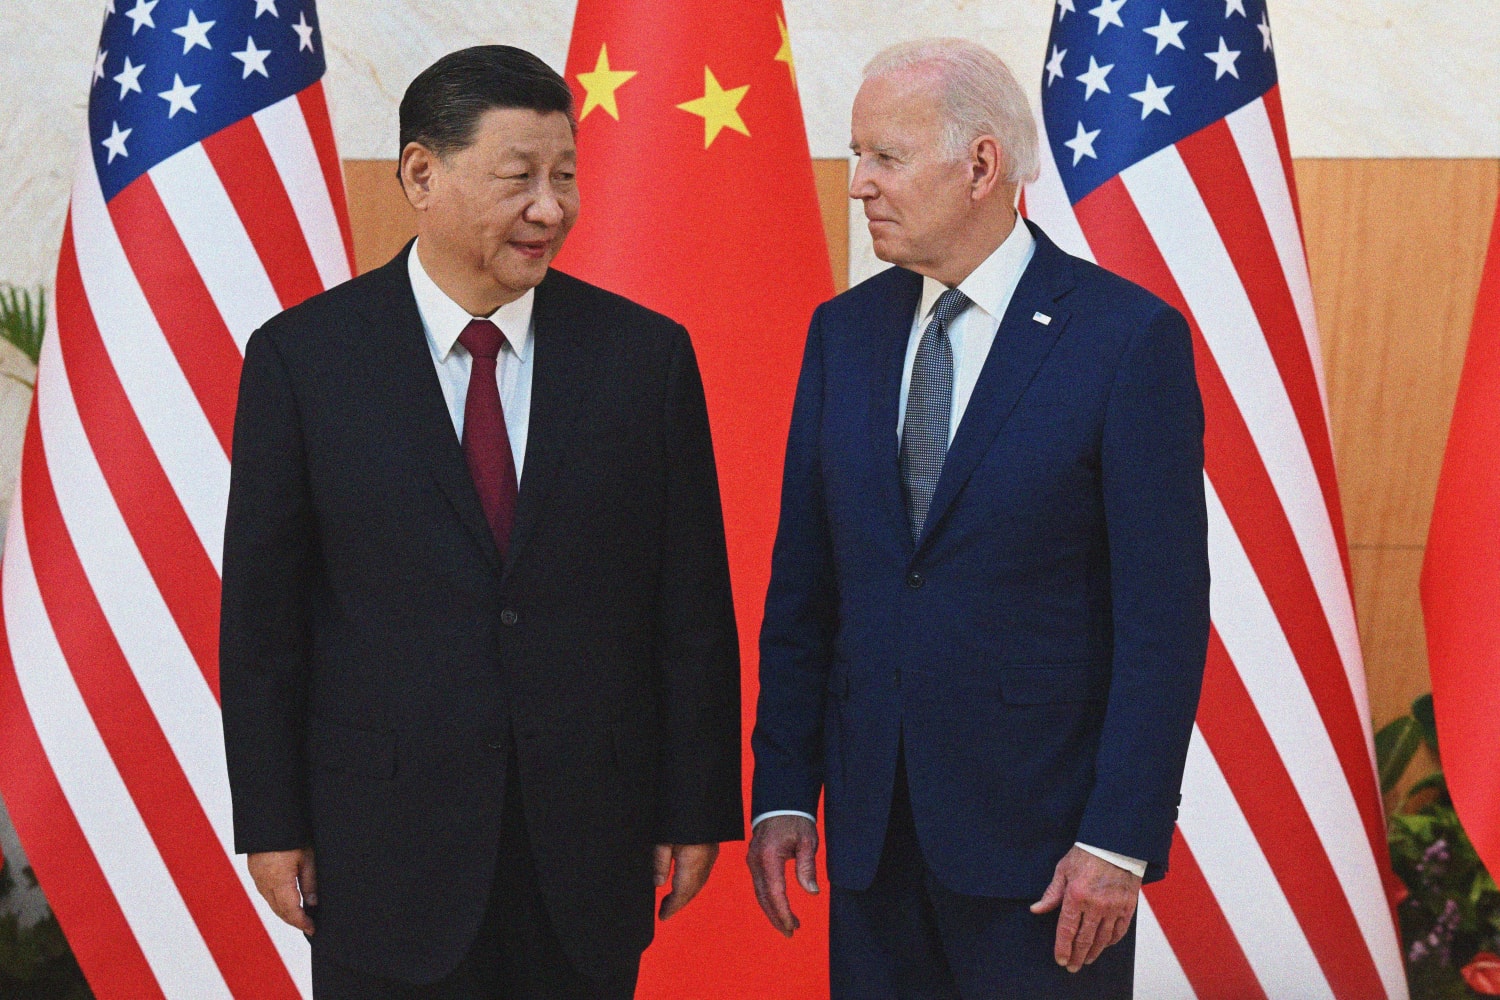 Retrasar las sanciones y minimizar el espionaje chino mejorará las relaciones con Pekín